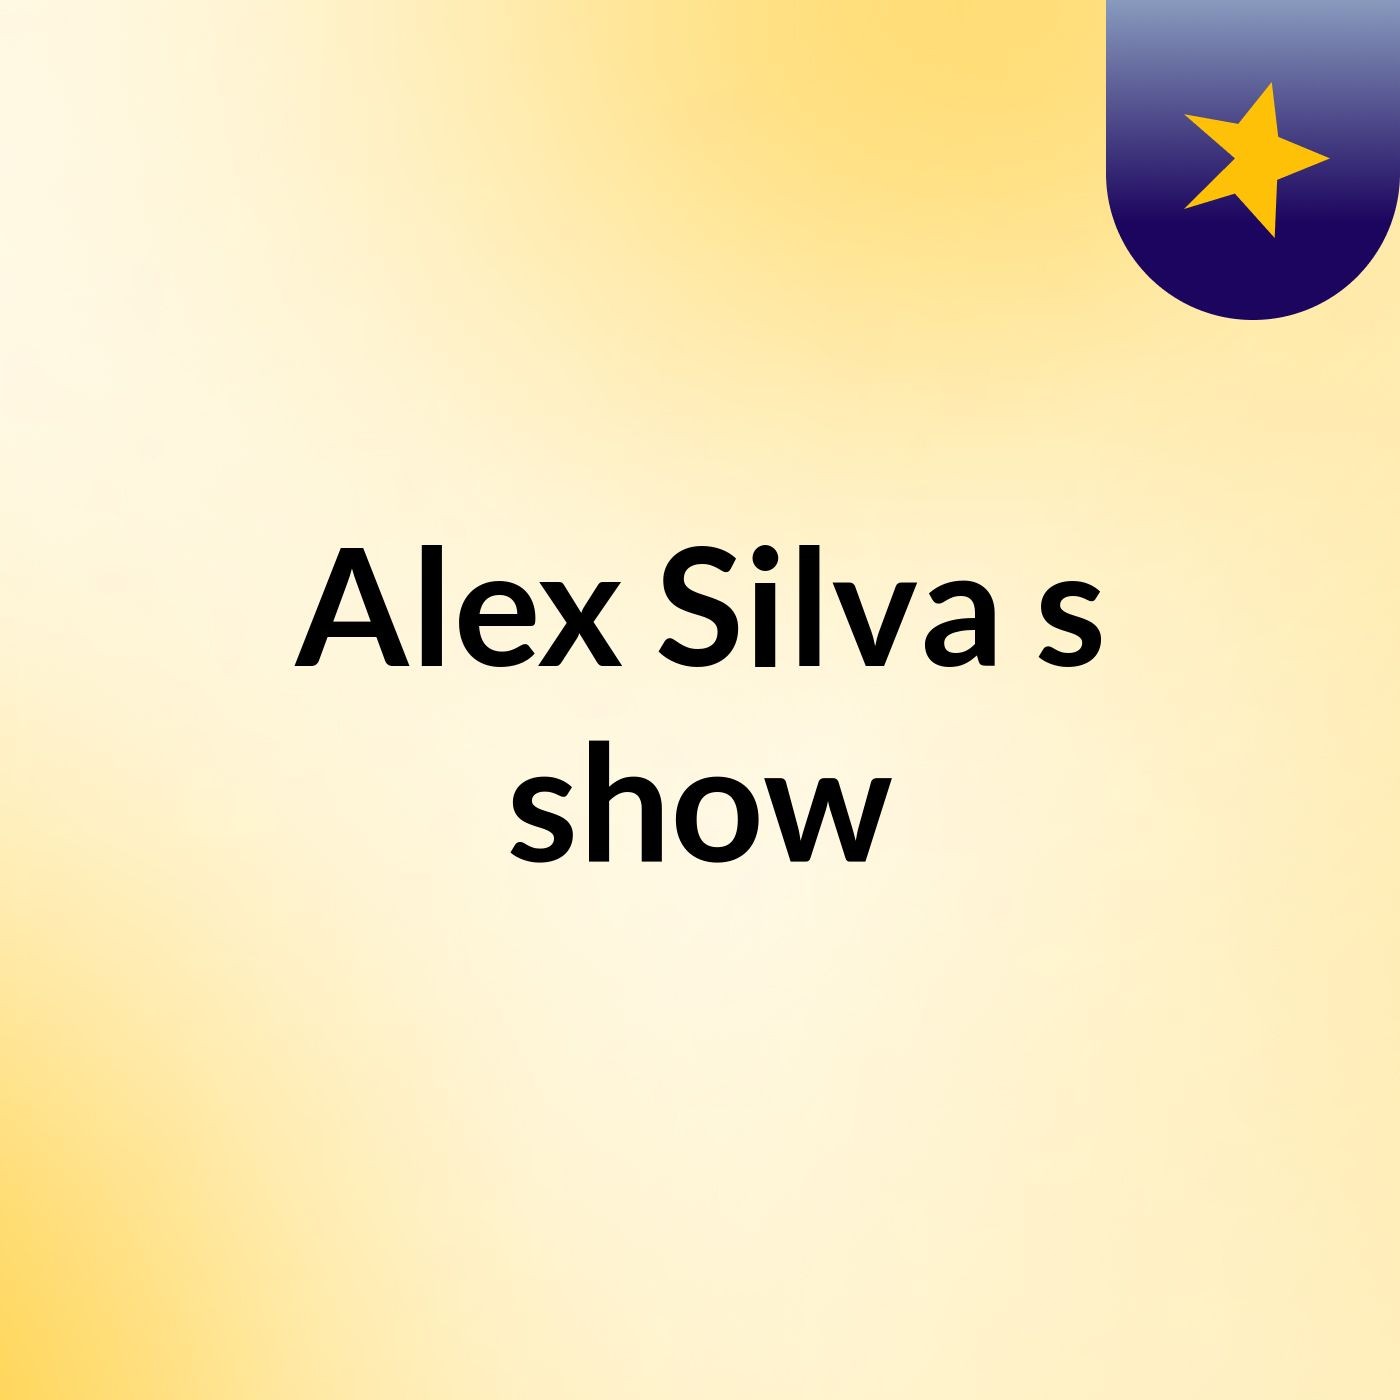 Alex Silva's show